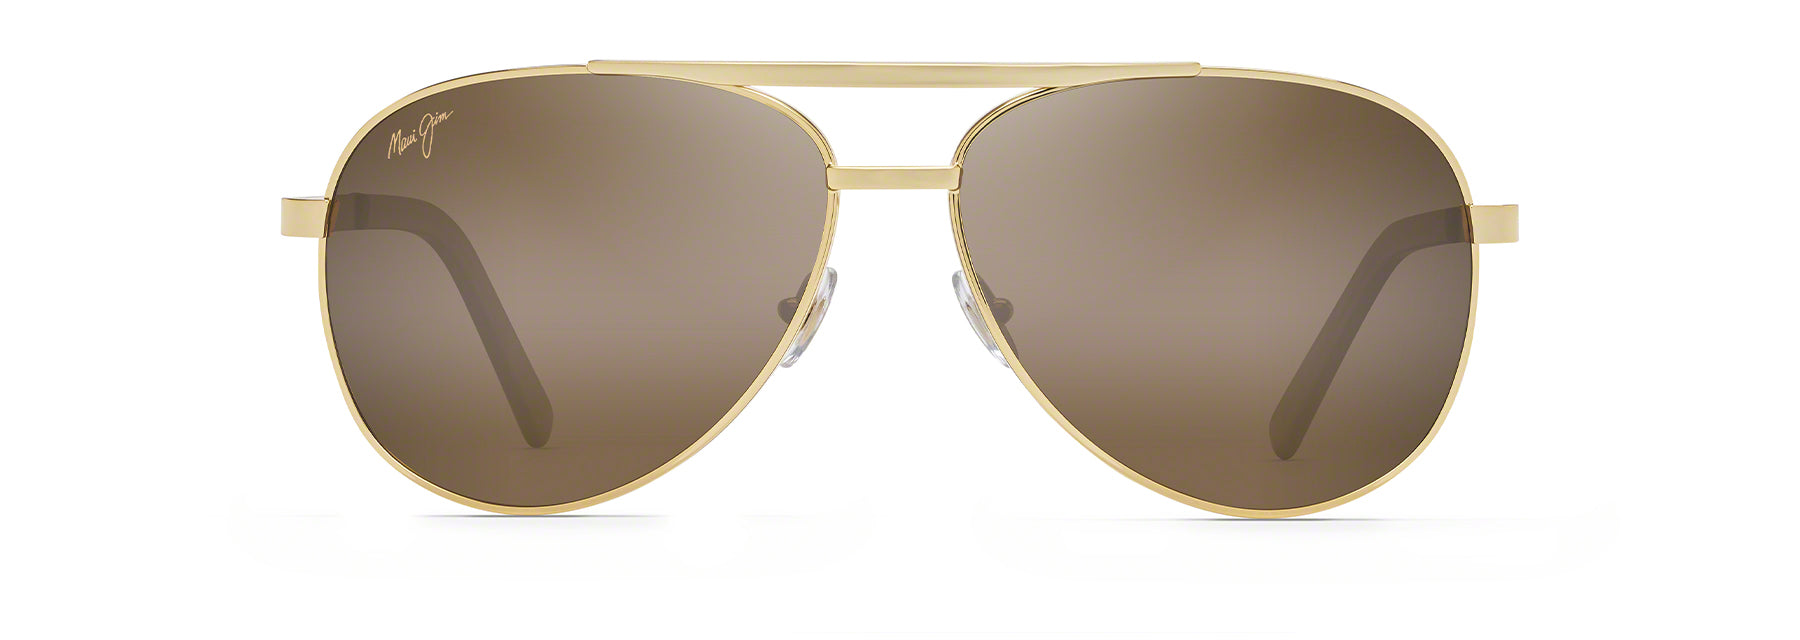 Maui Jim Seacliff Sunglasses